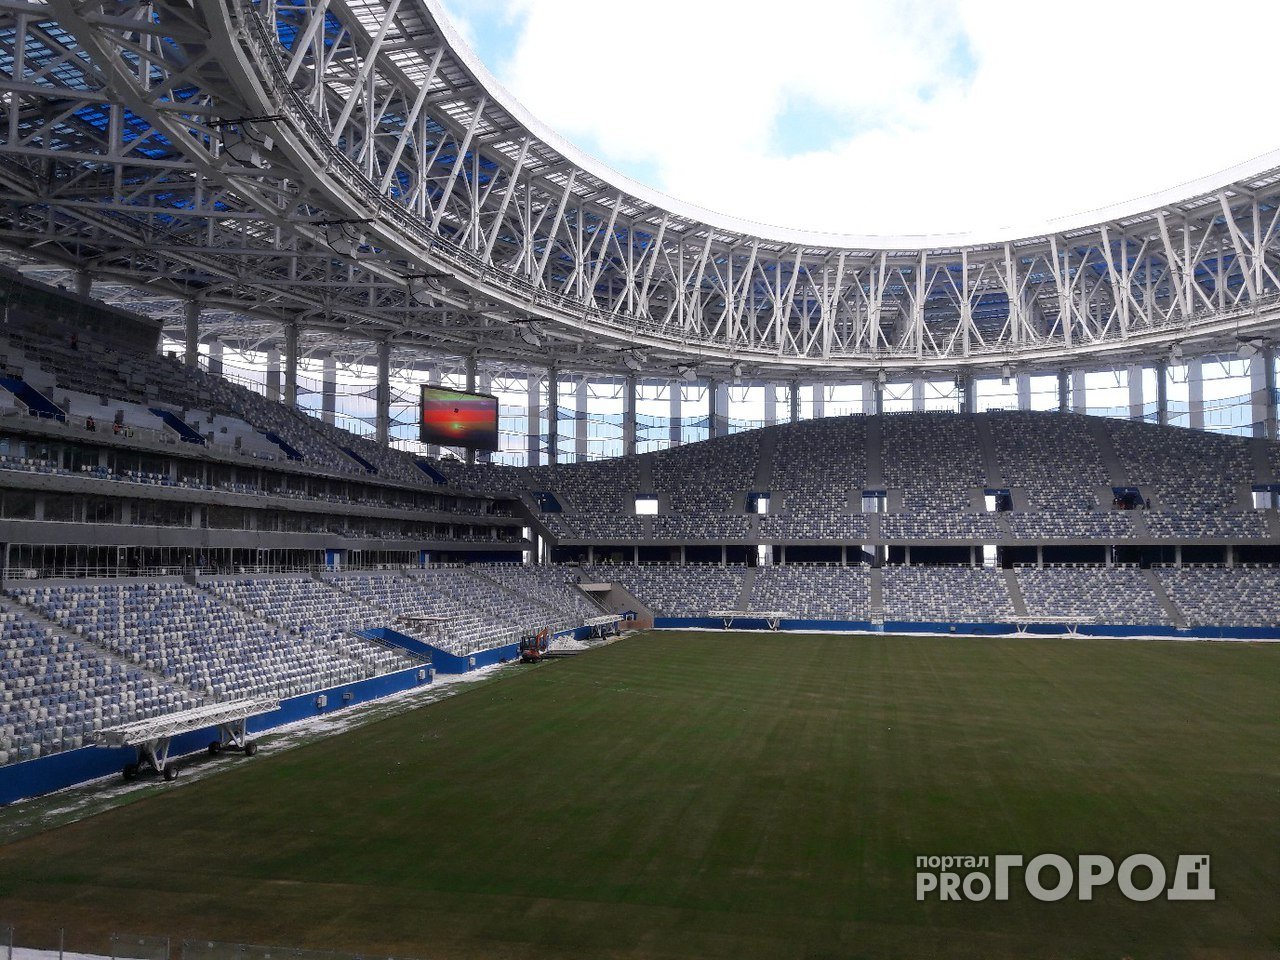 Дмитрий Медведев выделил деньги на достройку стадиона «Нижний Новгород»